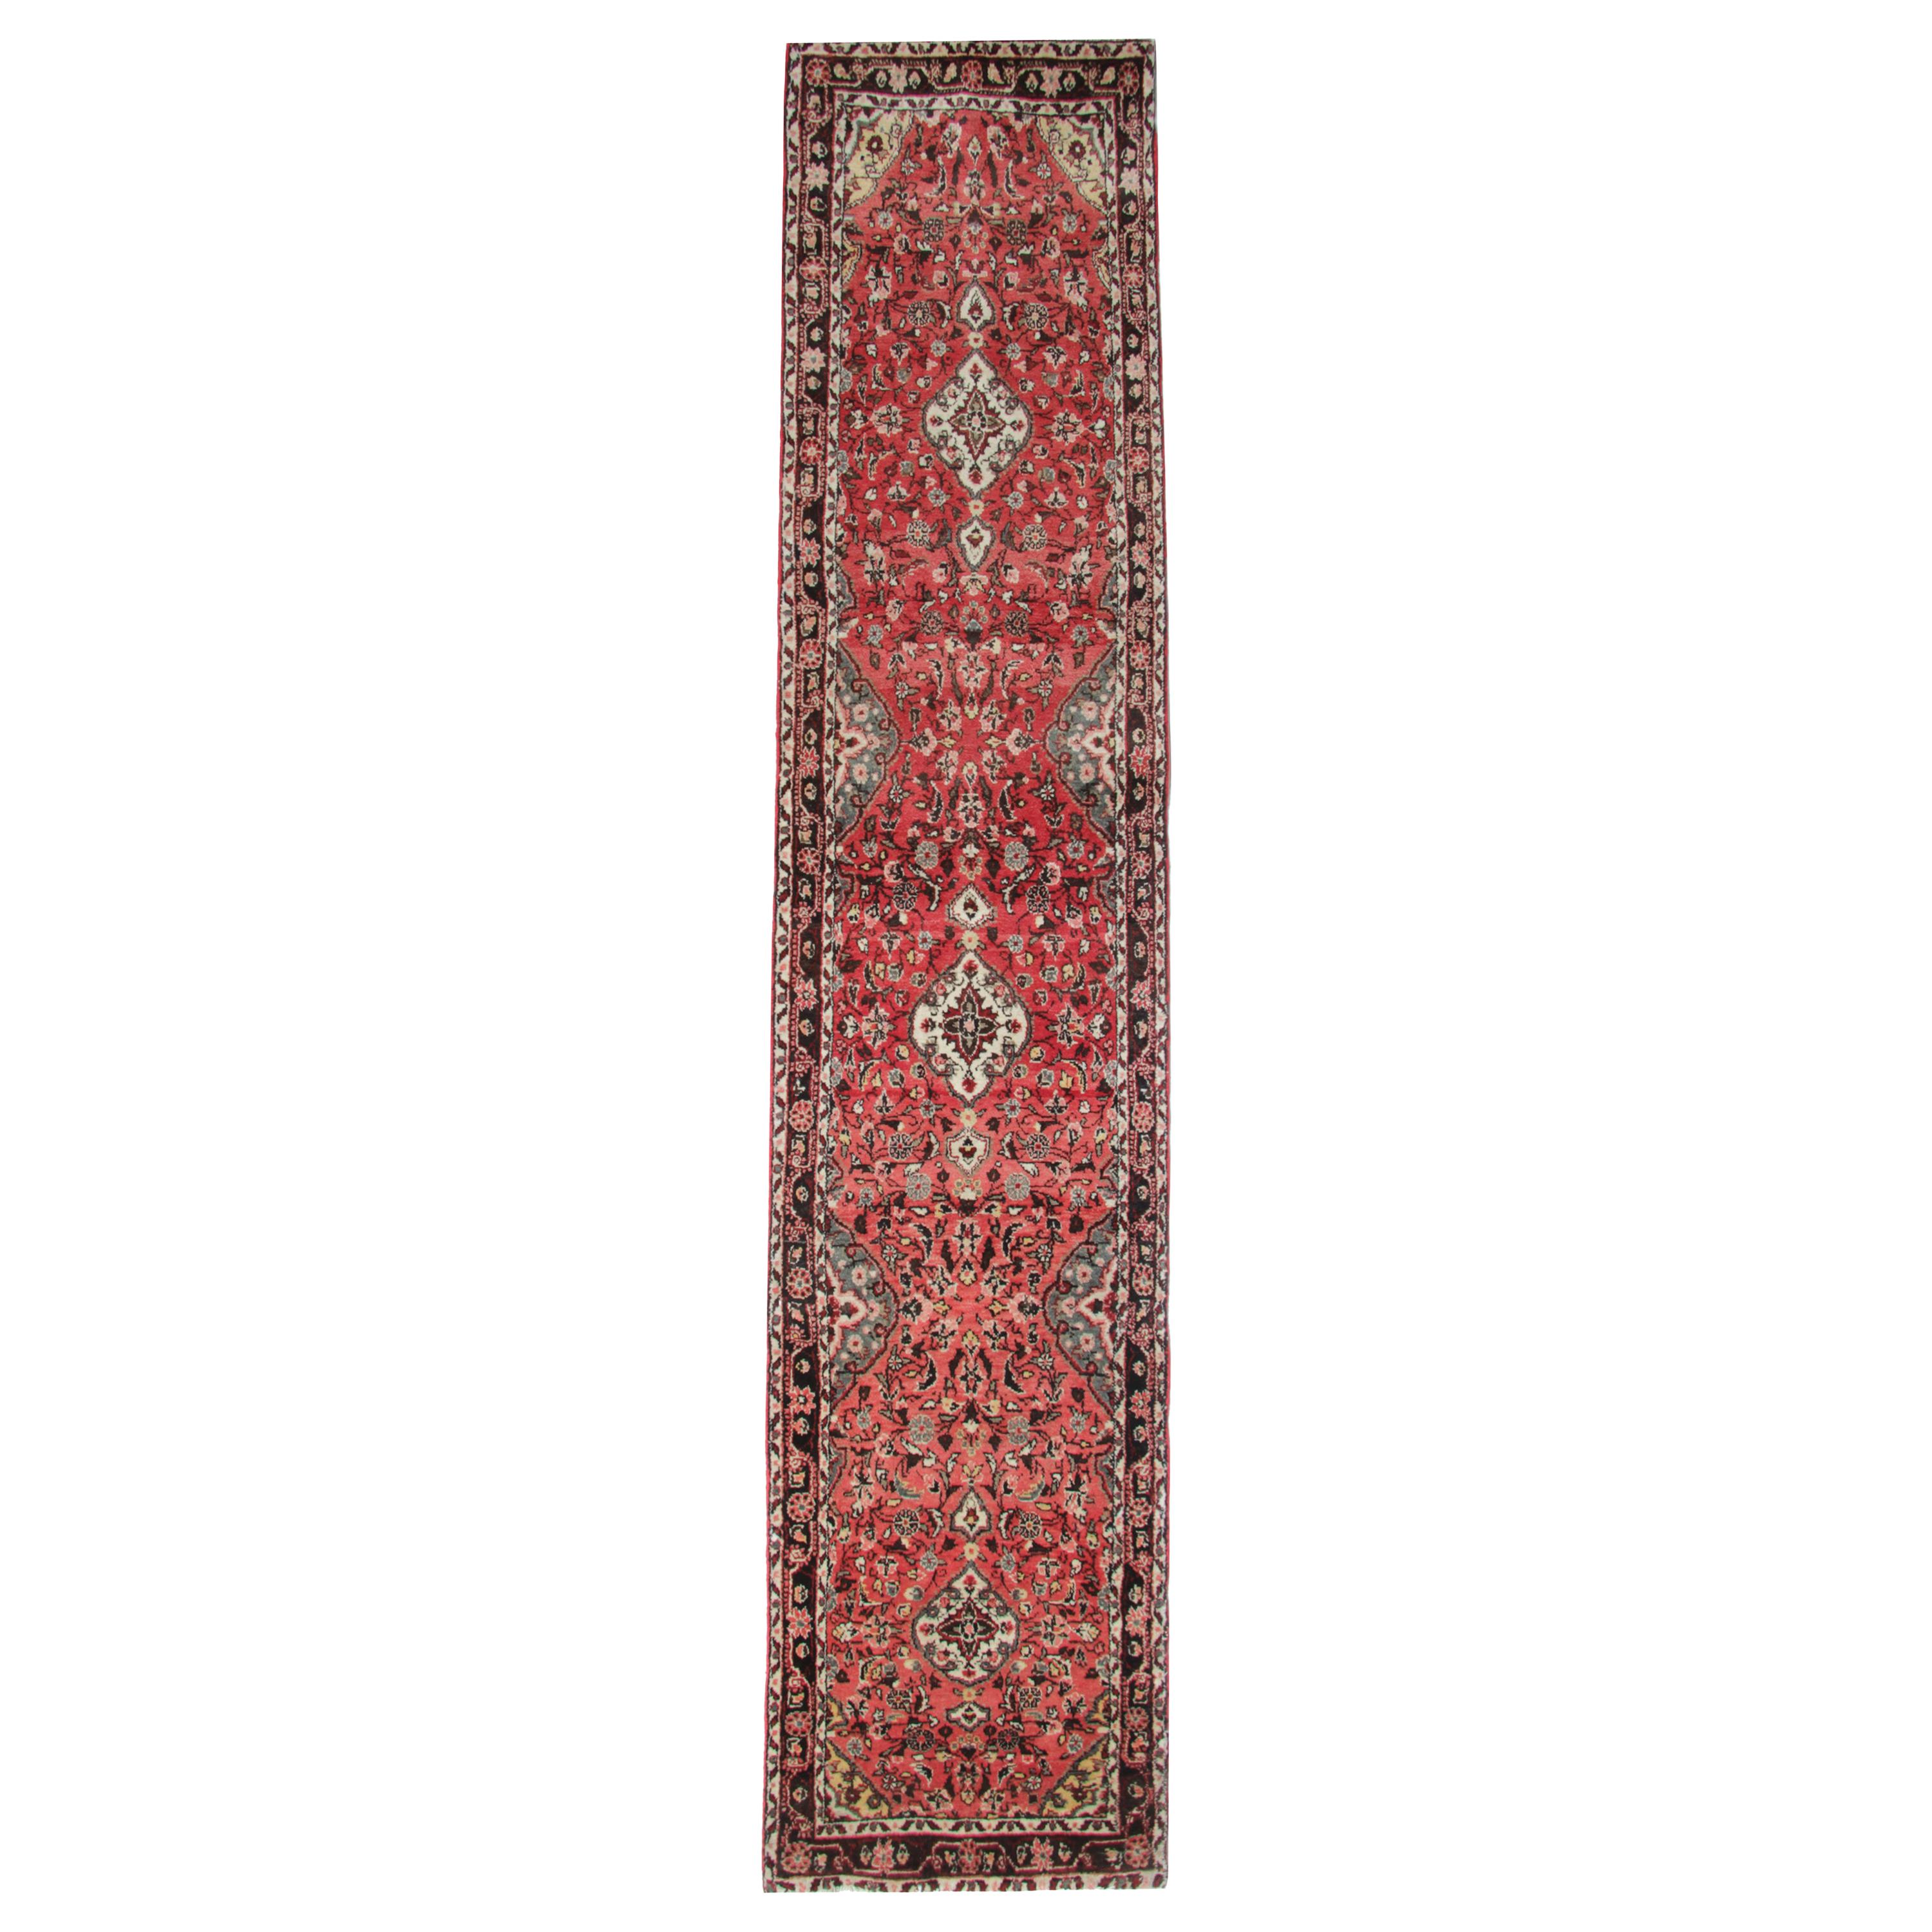 Vintage Runners Handmade Carpet Oriental Rugs Red Wool Stair Runner